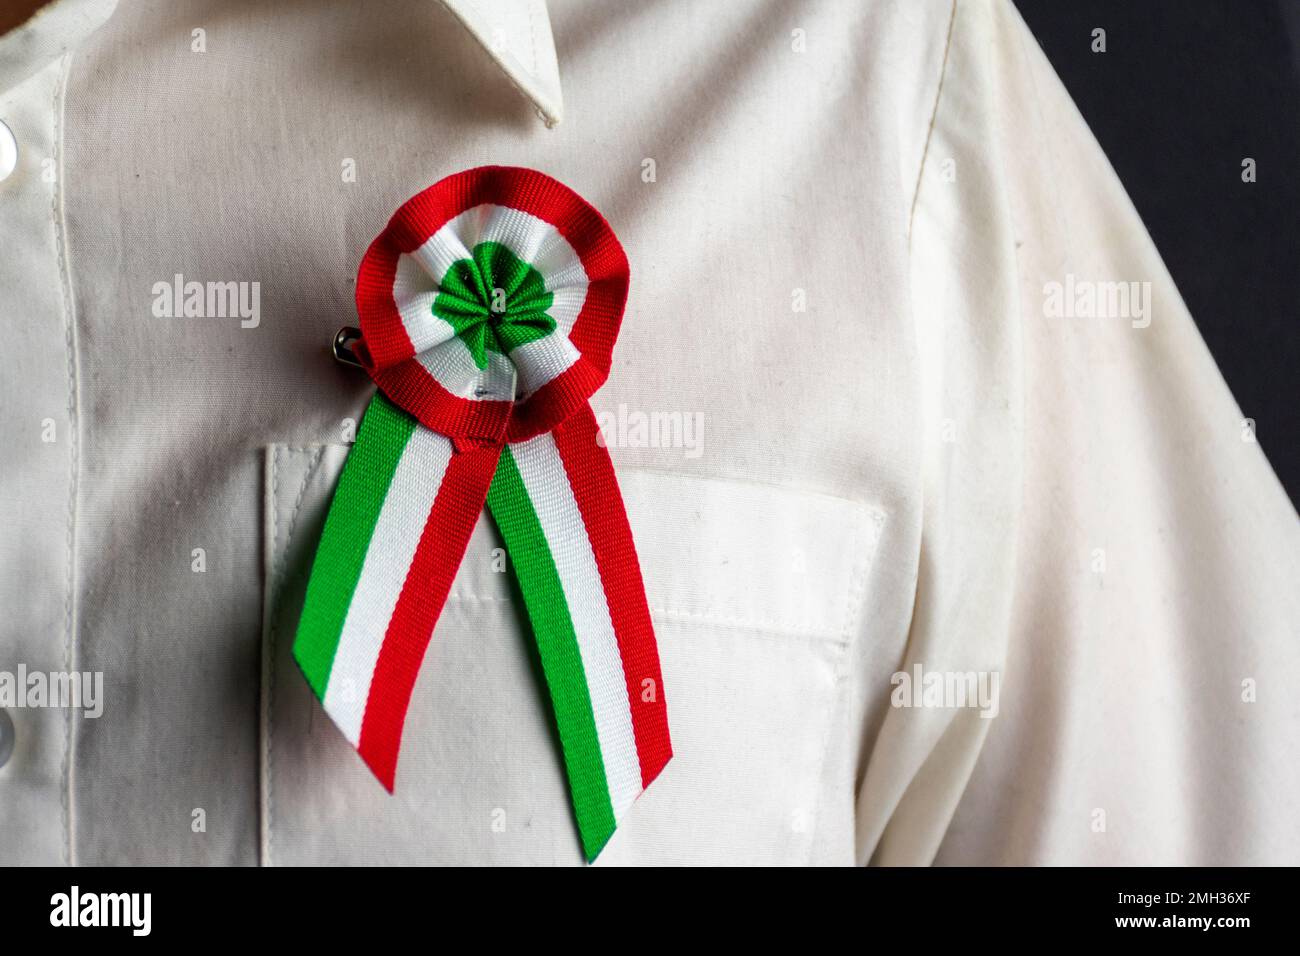 Coq tricolore hongrois avec chemise blanche Banque D'Images